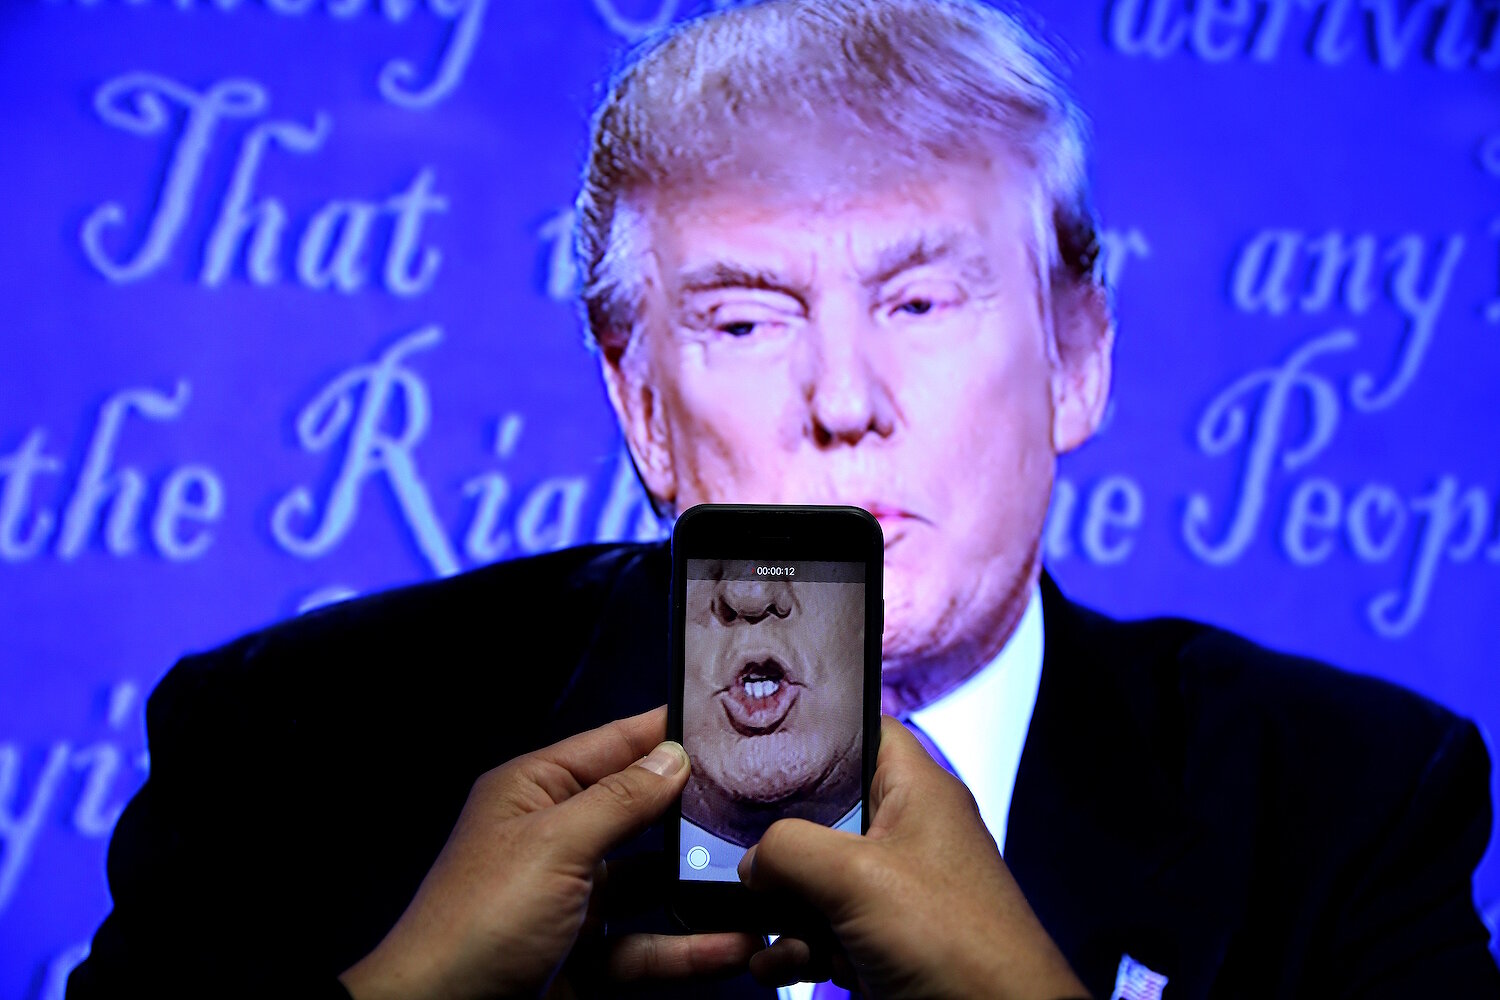 <p>26 сентября. Хампстед, США. Журналист снимает&nbsp;на телефон кандидата от республиканцев Дональда Трампа во время первых дебатов с Хиллари Клинтон.</p>